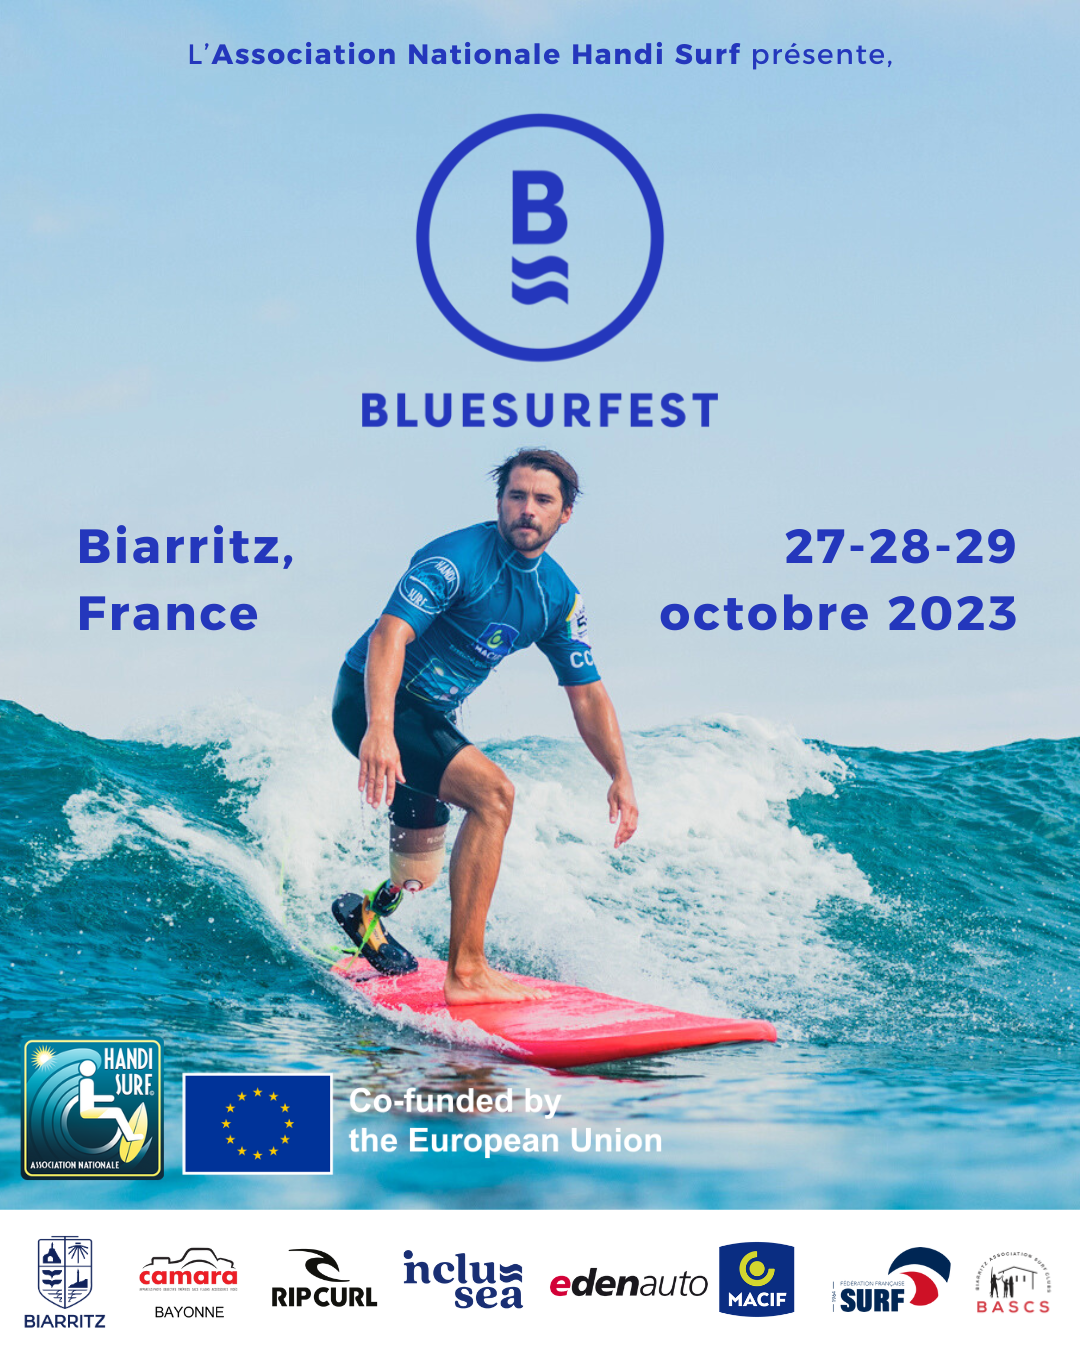 L’Association Nationale Handi Surf organise le «BLUESURFEST France», un festival du surf inclusif, du 27 au 29 octobre prochains à Biarritz